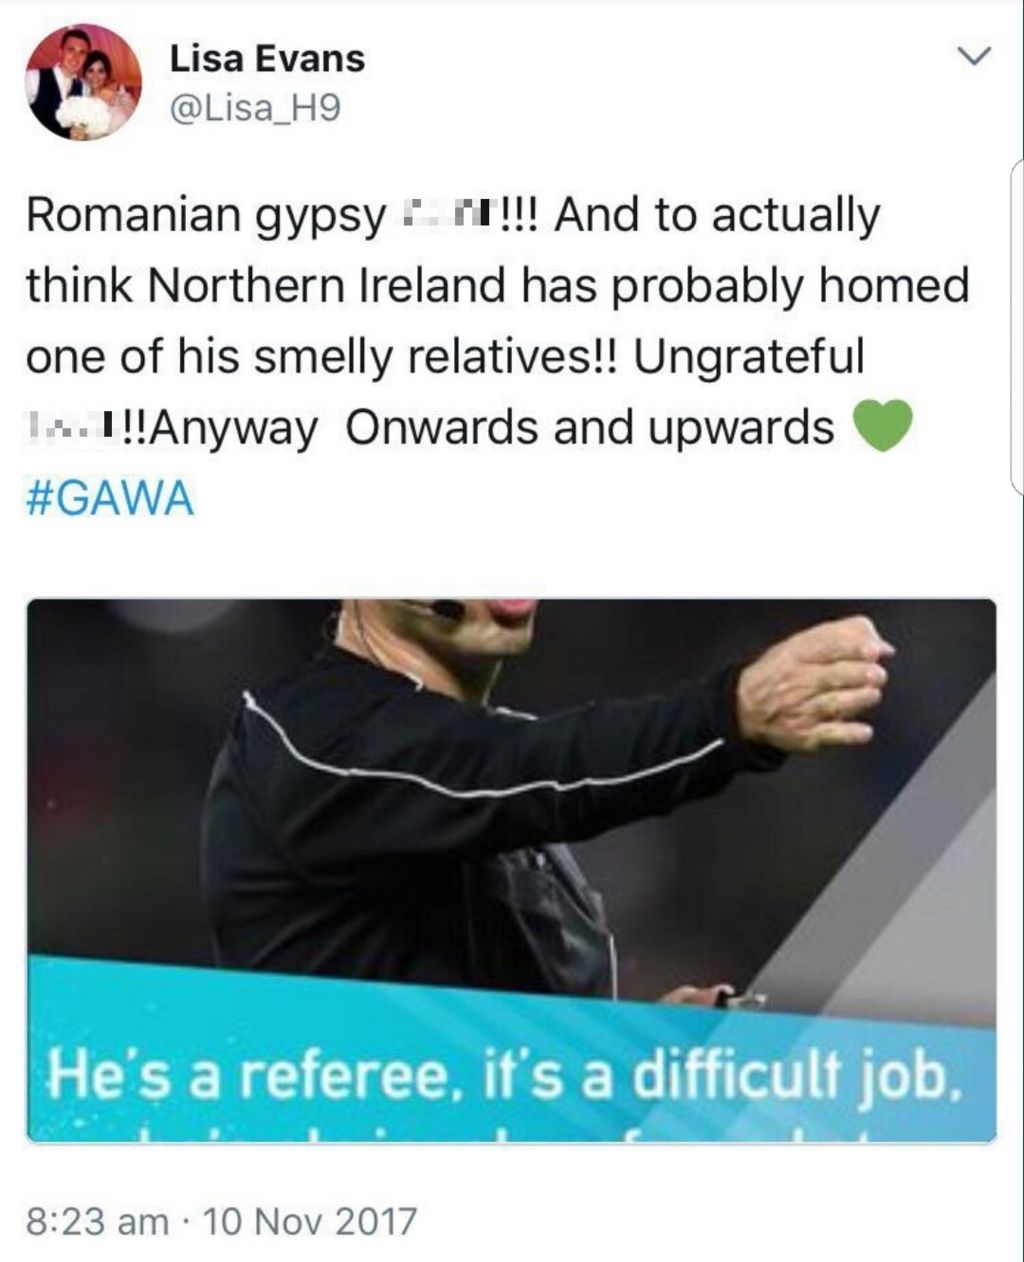 Tweet sent by Lisa Evans, the wife of NI footballer Corry Evans